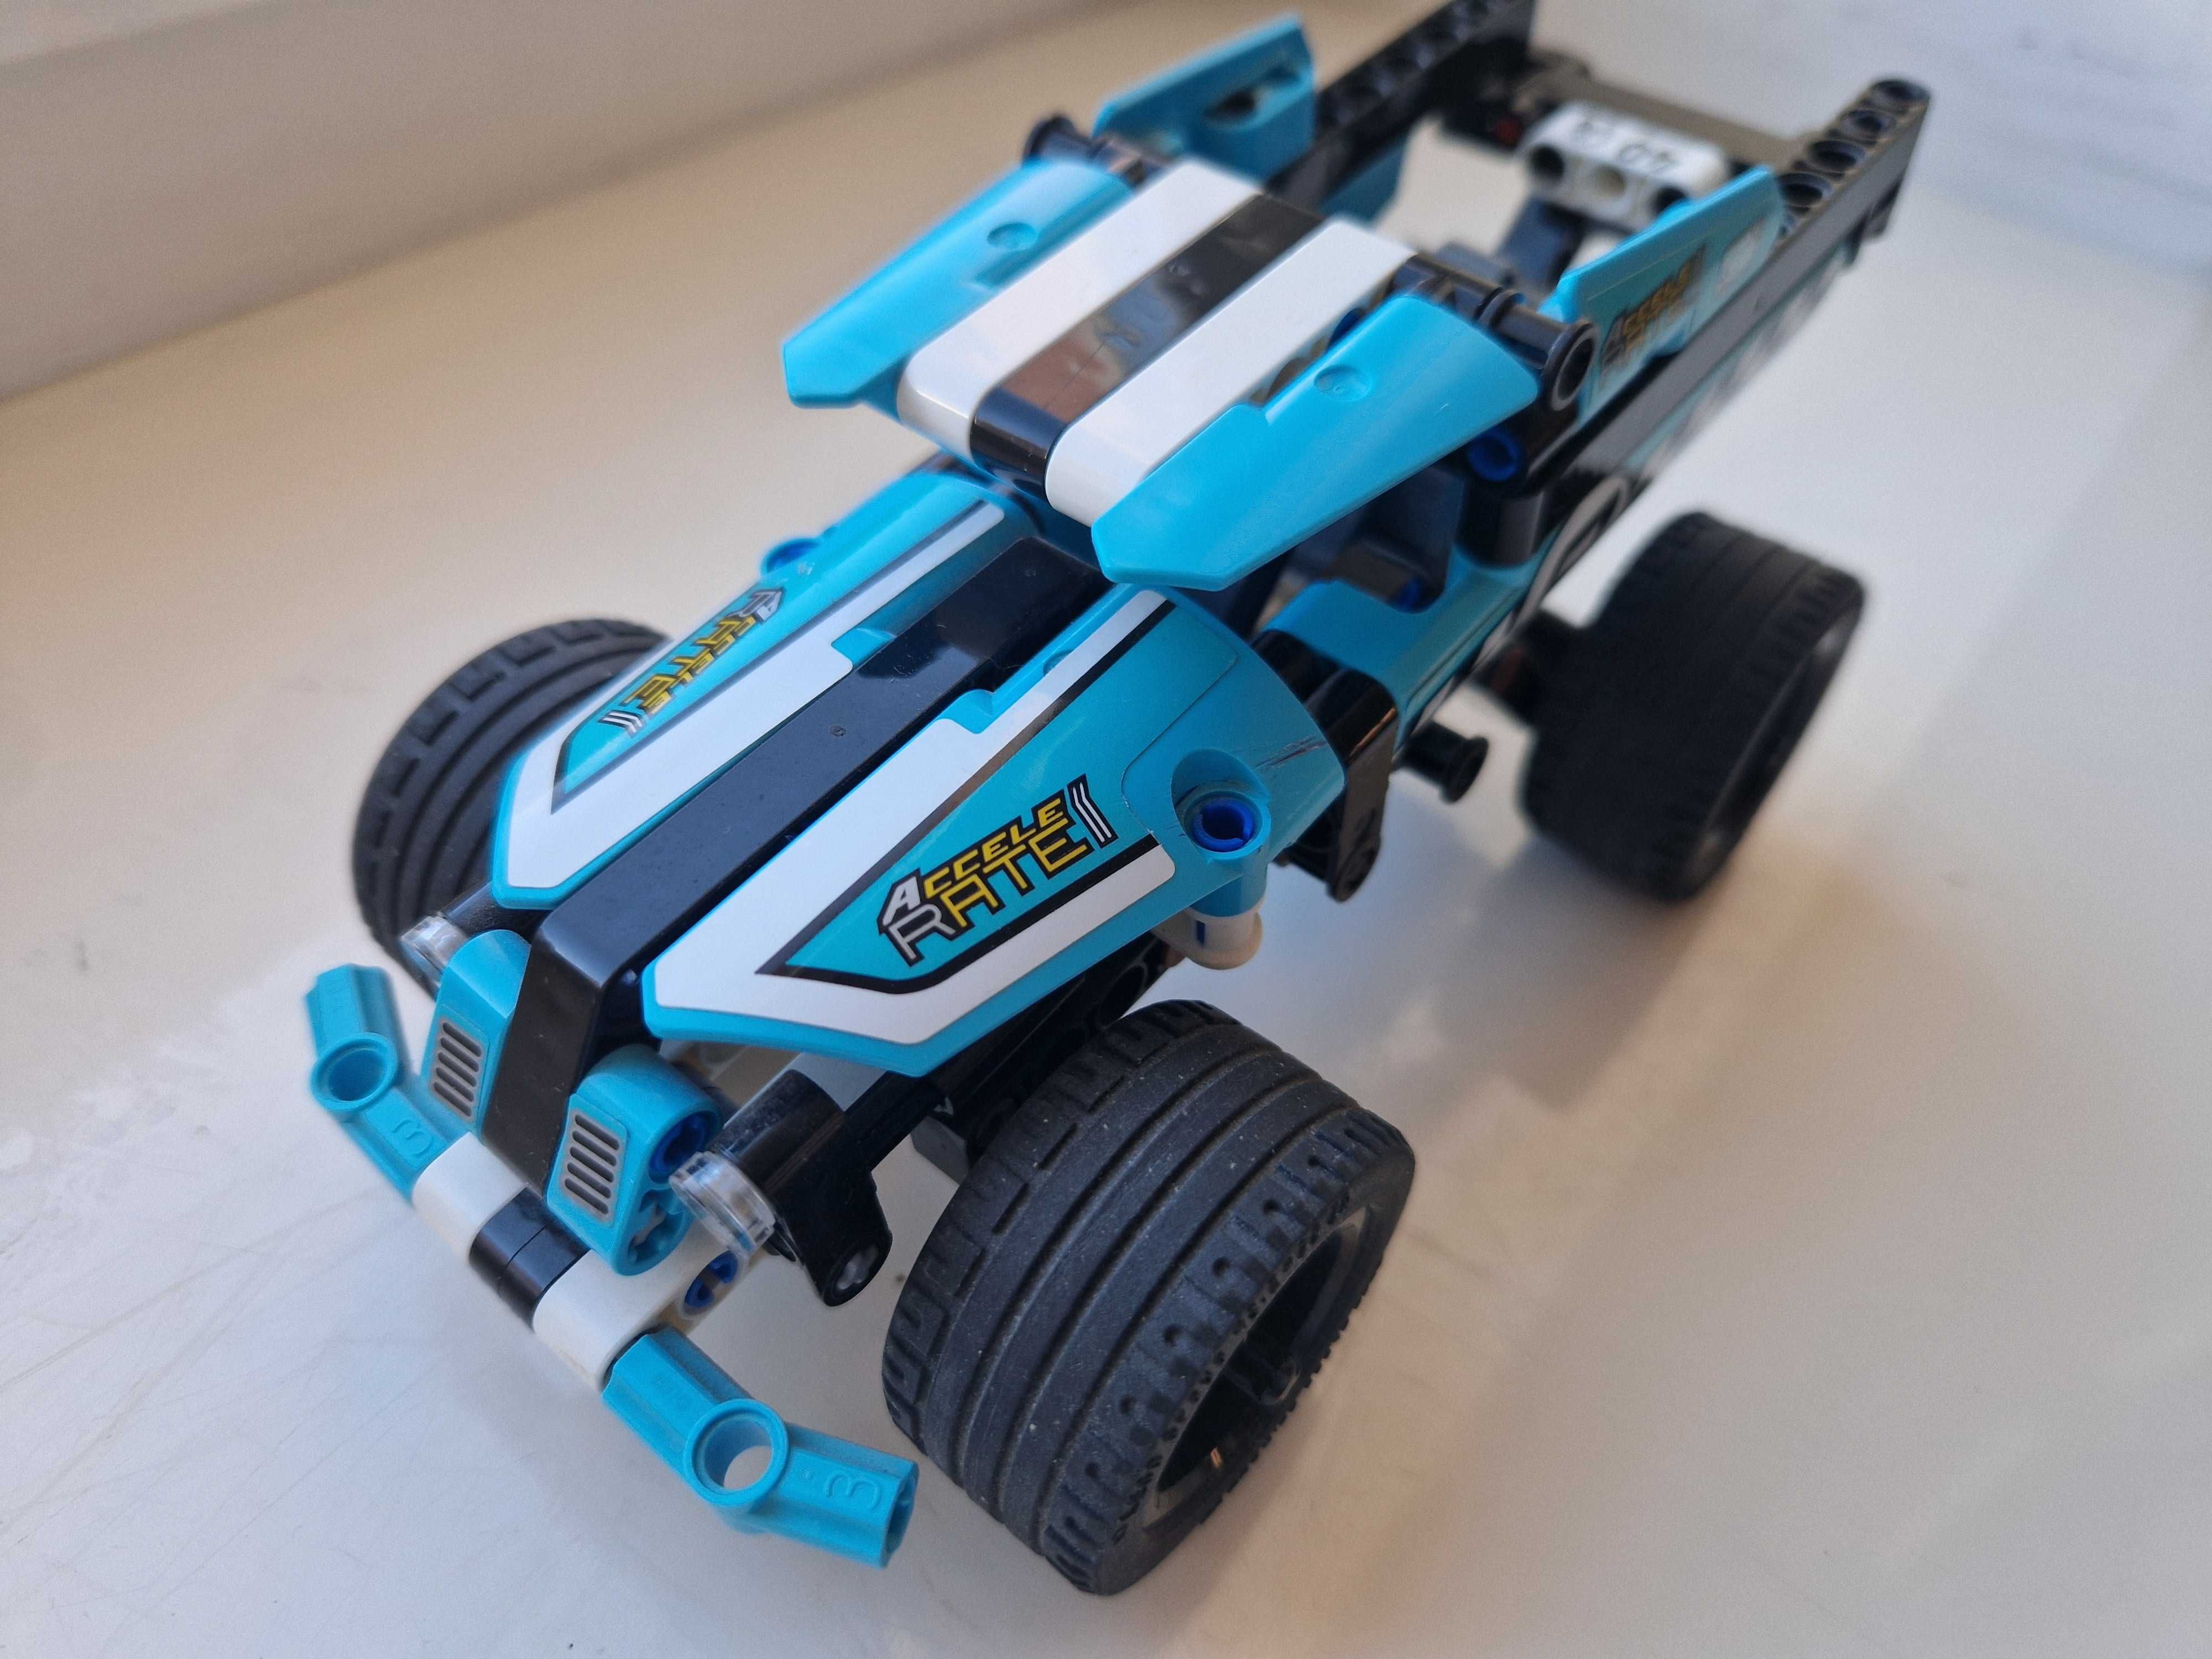 Oryginalny samochód Lego Technics z wyrzutnią